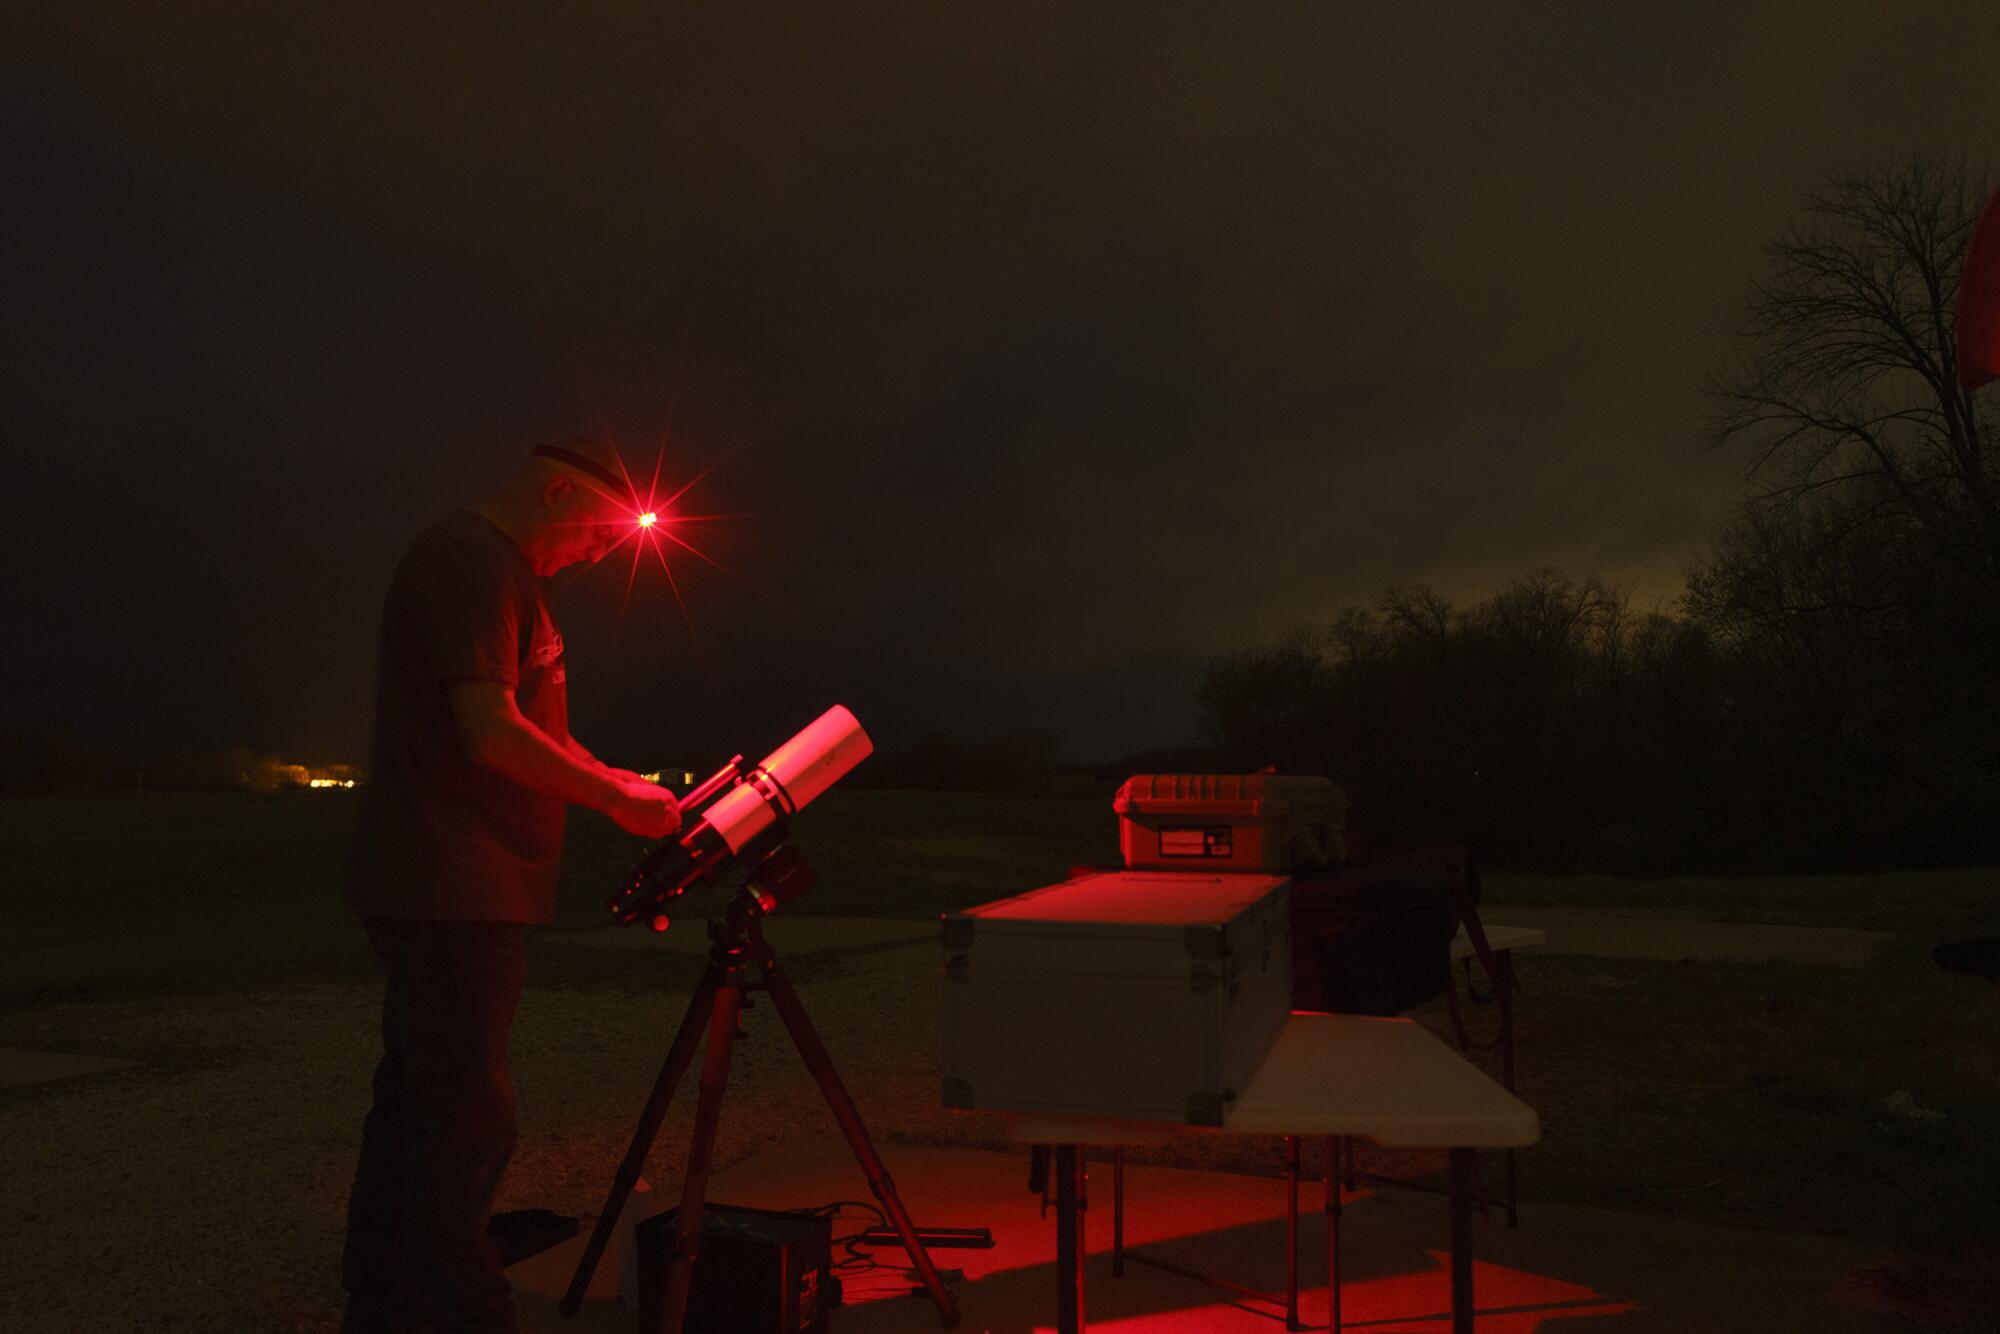 مردی در چراغ قرمز با تلسکوپ در شب